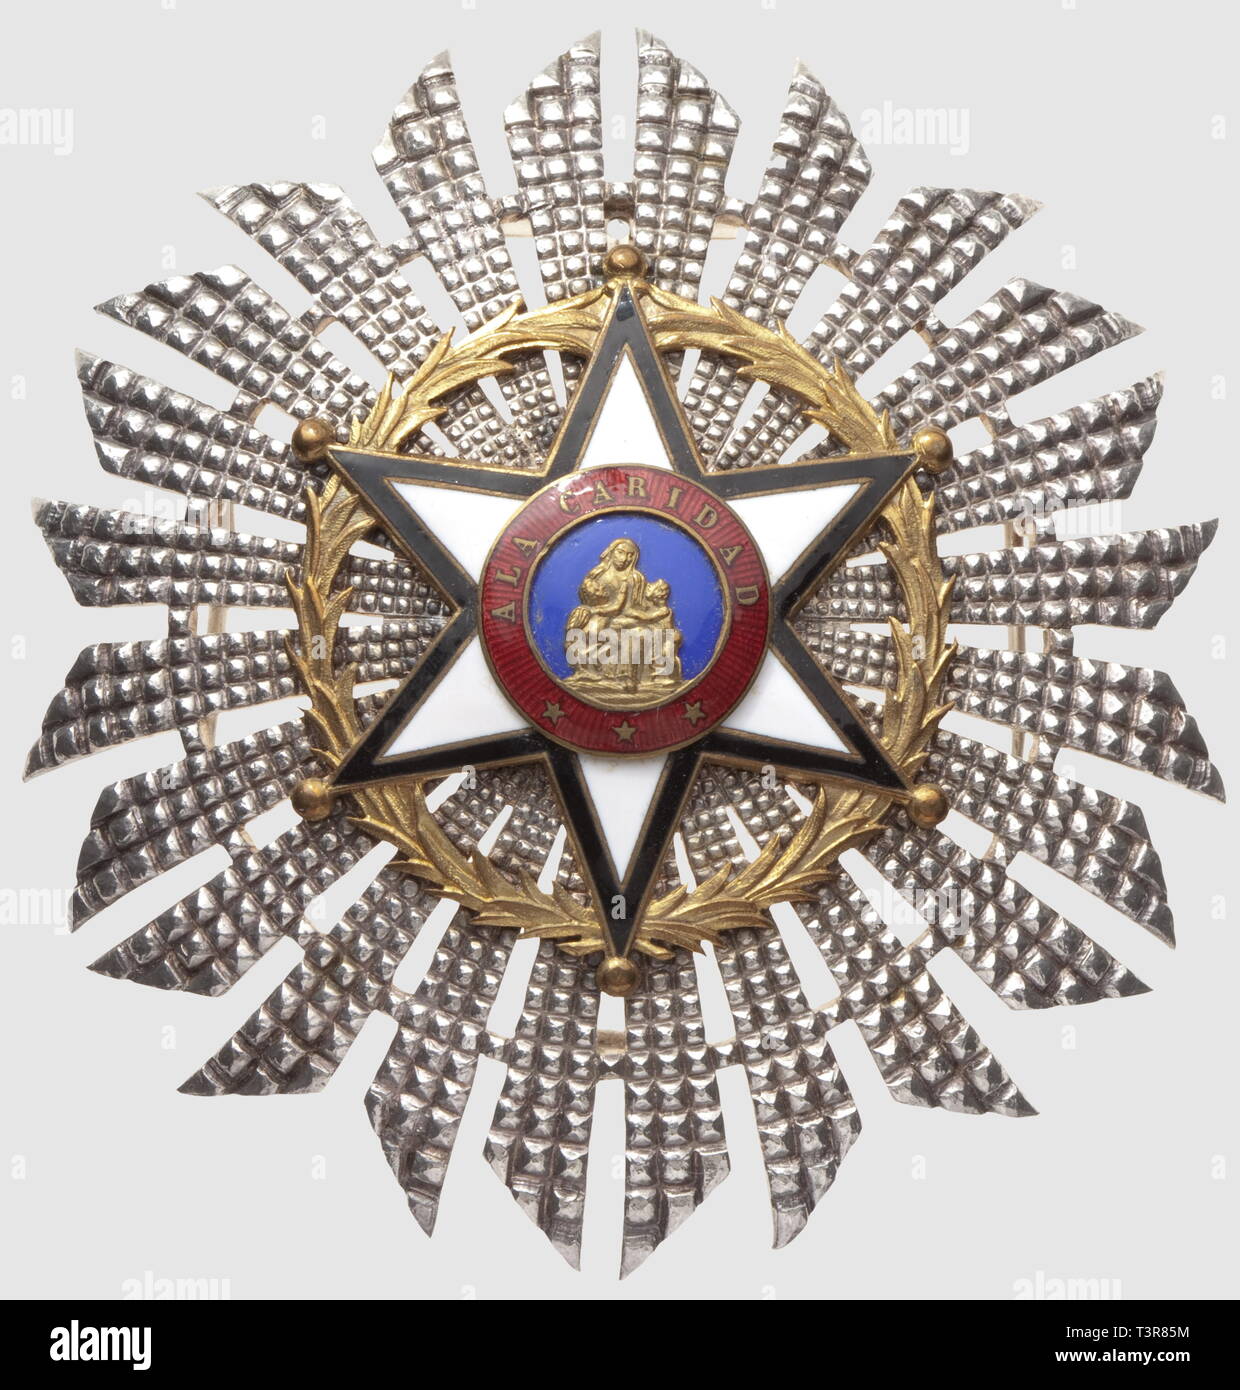 Ordre Civil de la Bienfaisance, 1er type (1856-1868 et 1875-1910), plaque de grand croix, argentée, diamètre 80mm, Additional-Rights-Clearance-Info-Not-Available Stock Photo